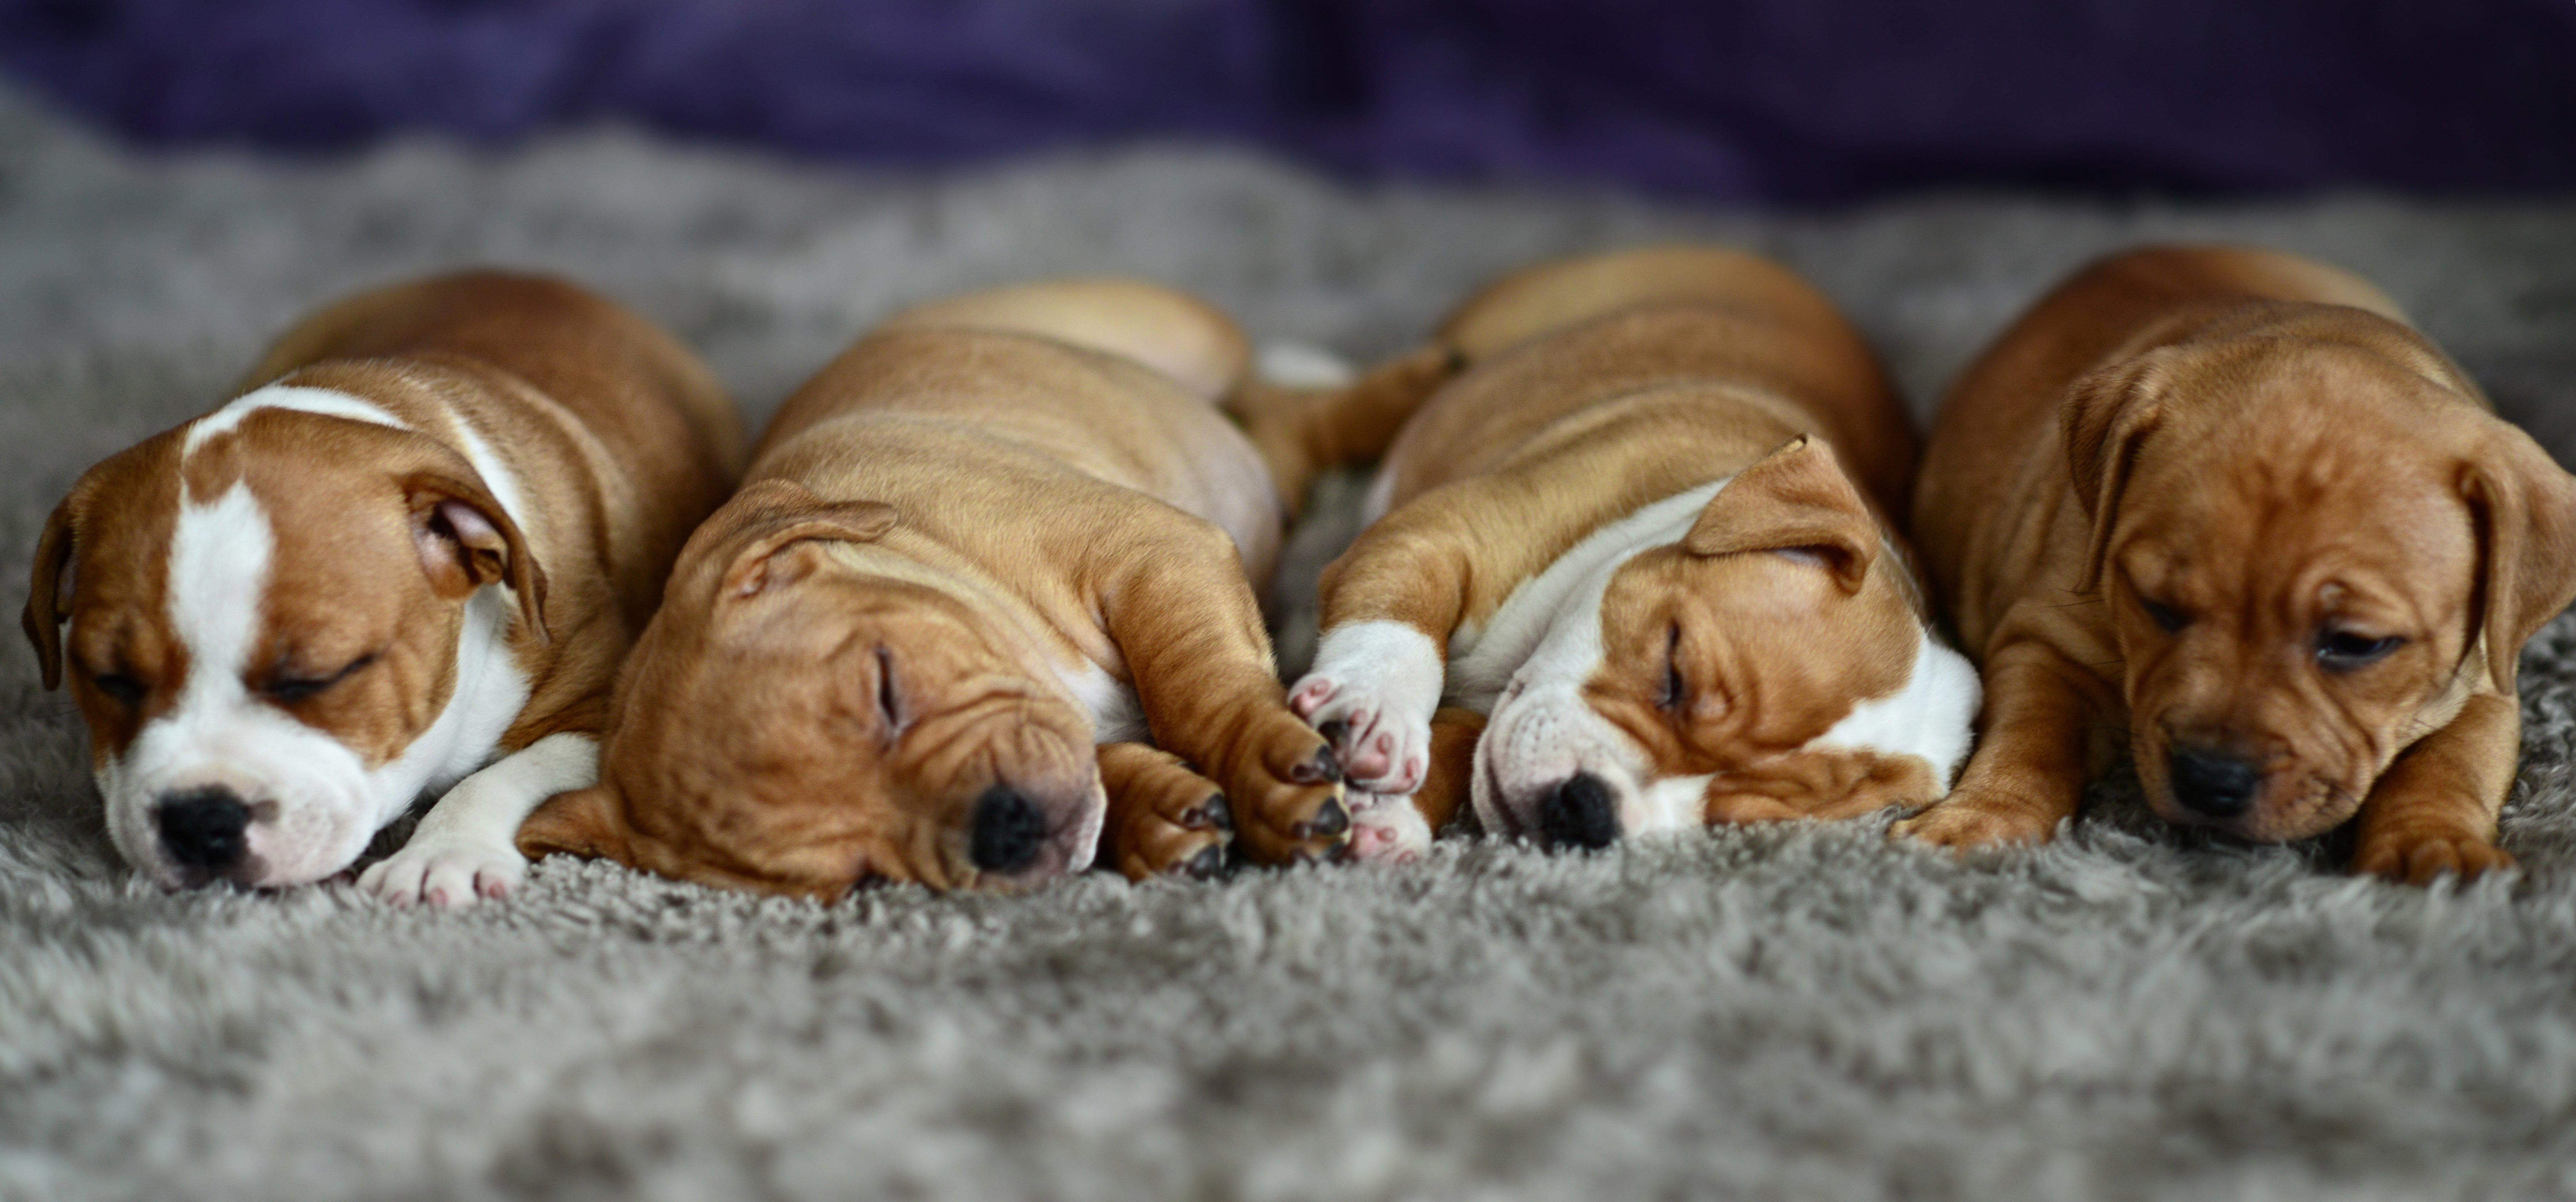 baby, Cute, Puppy, Dog, Sleeping, Sleep Wallpaper